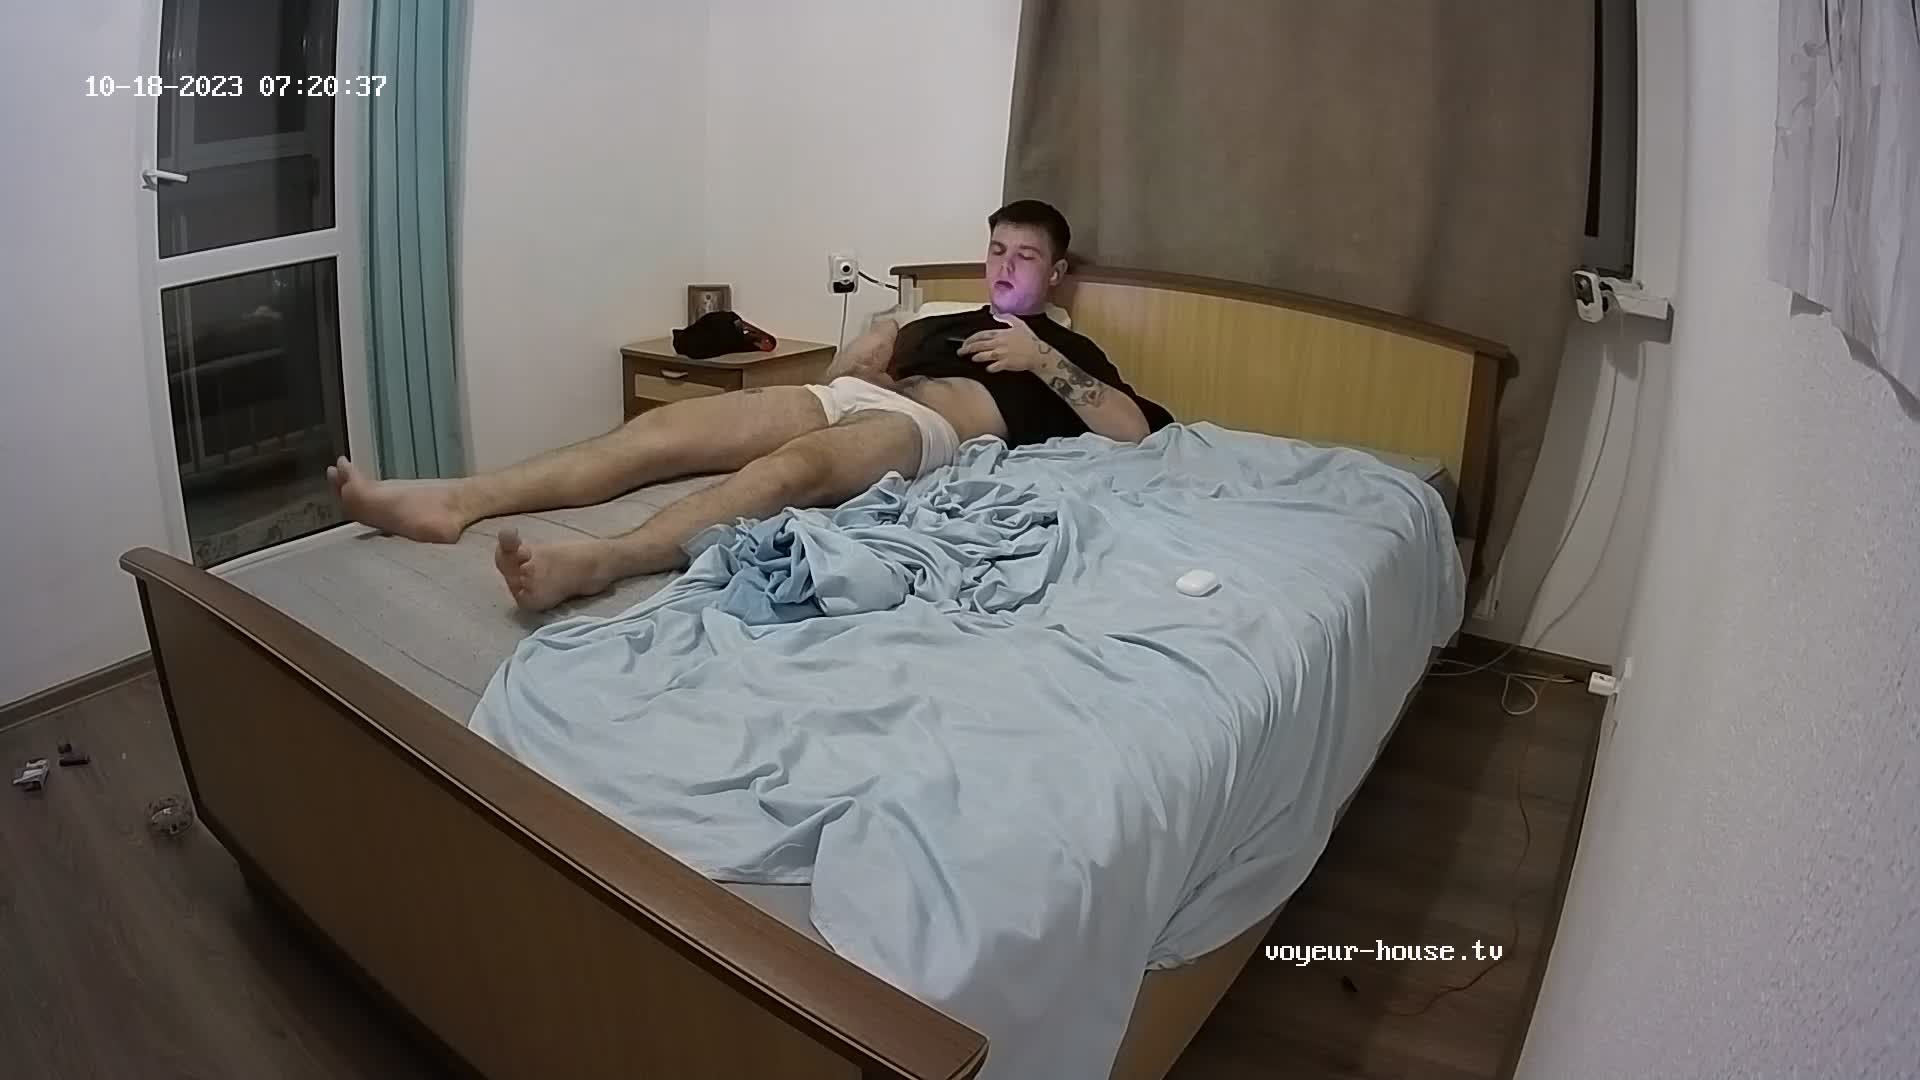 Artem jerking off in the bedroom 18 Oct 2023